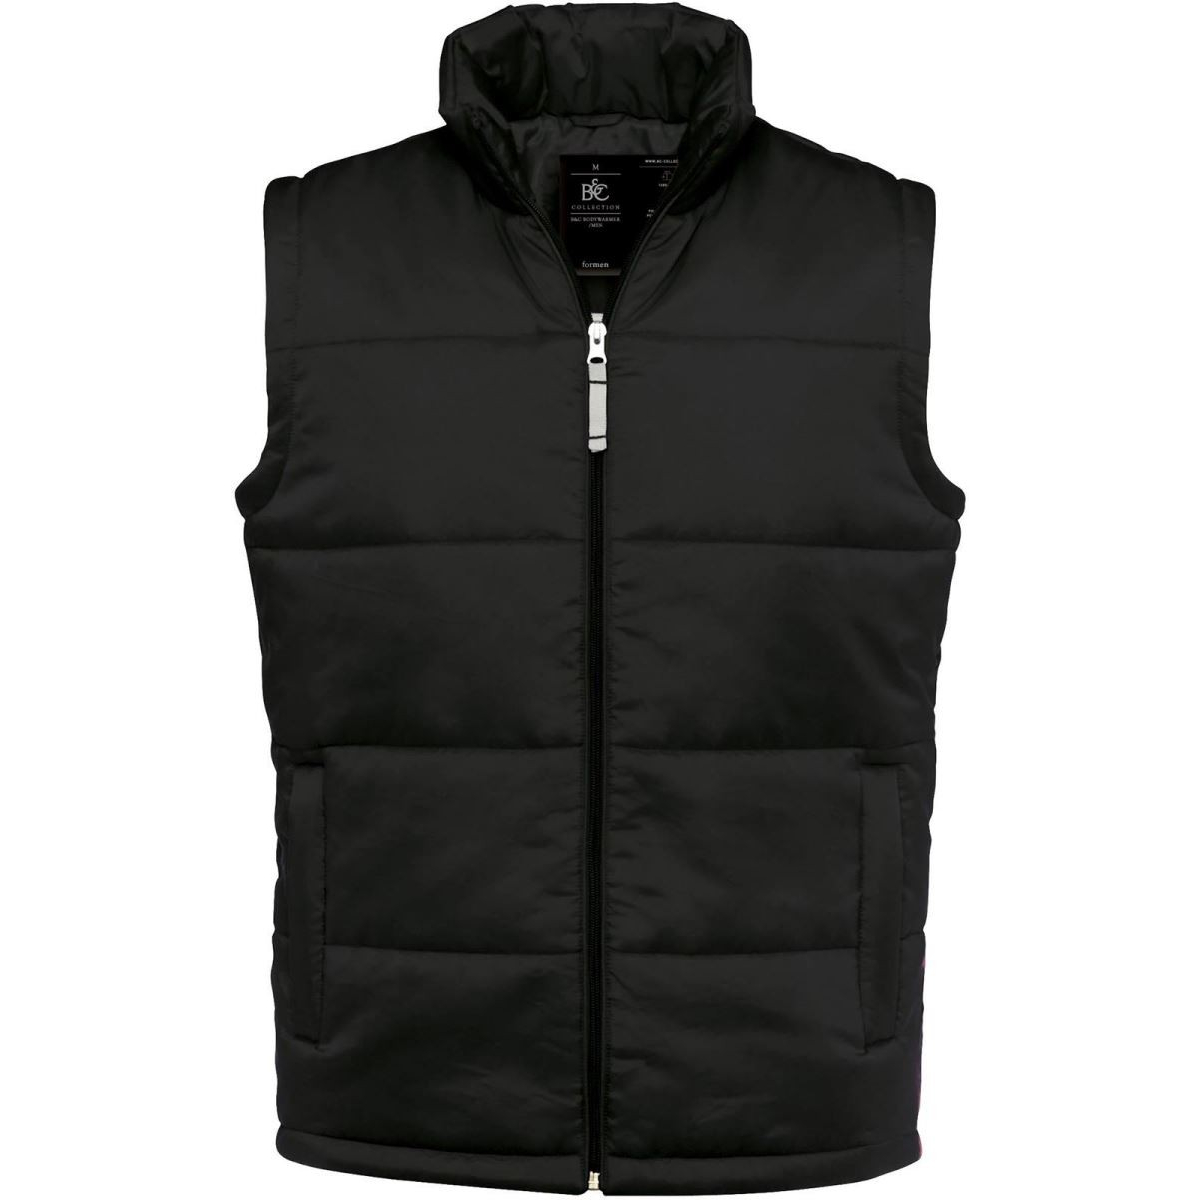 Pánská vesta B&C Bodywarmer - černá, XL